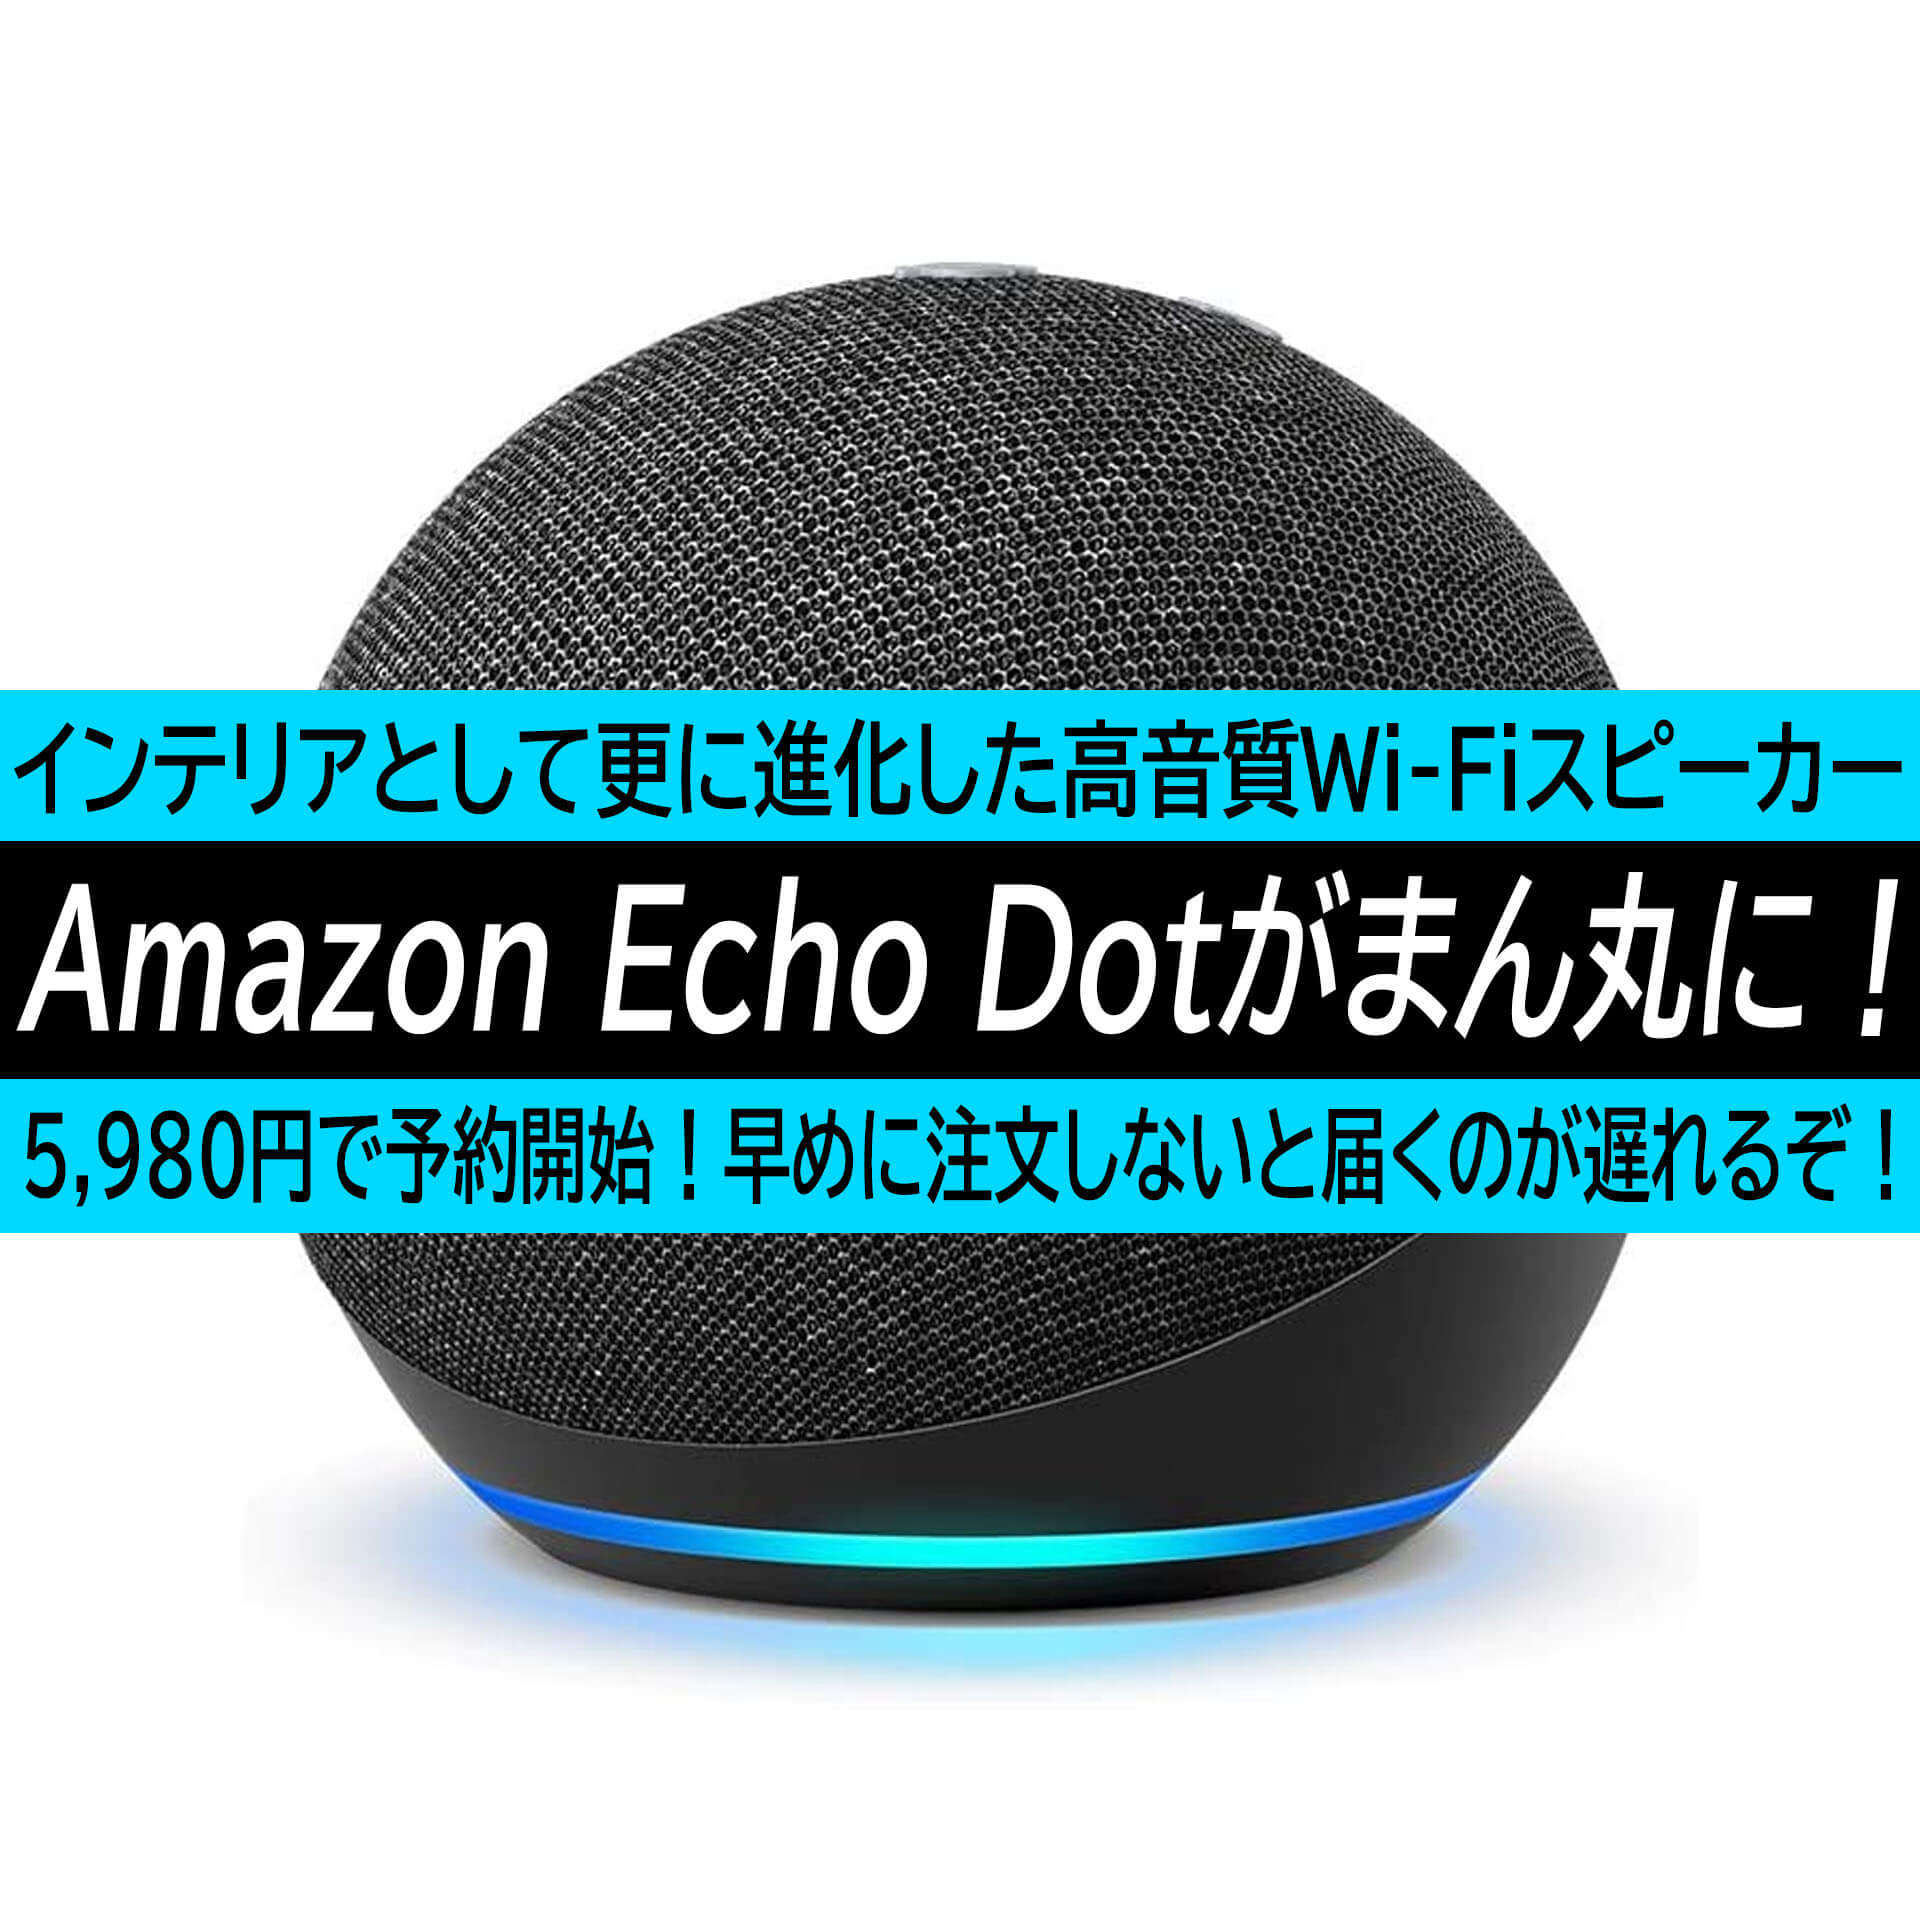 Amazon Echo Dotが丸くなって新登場 可愛すぎるwi Fi対応高音質スピーカーが5980円で予約受け付け開始